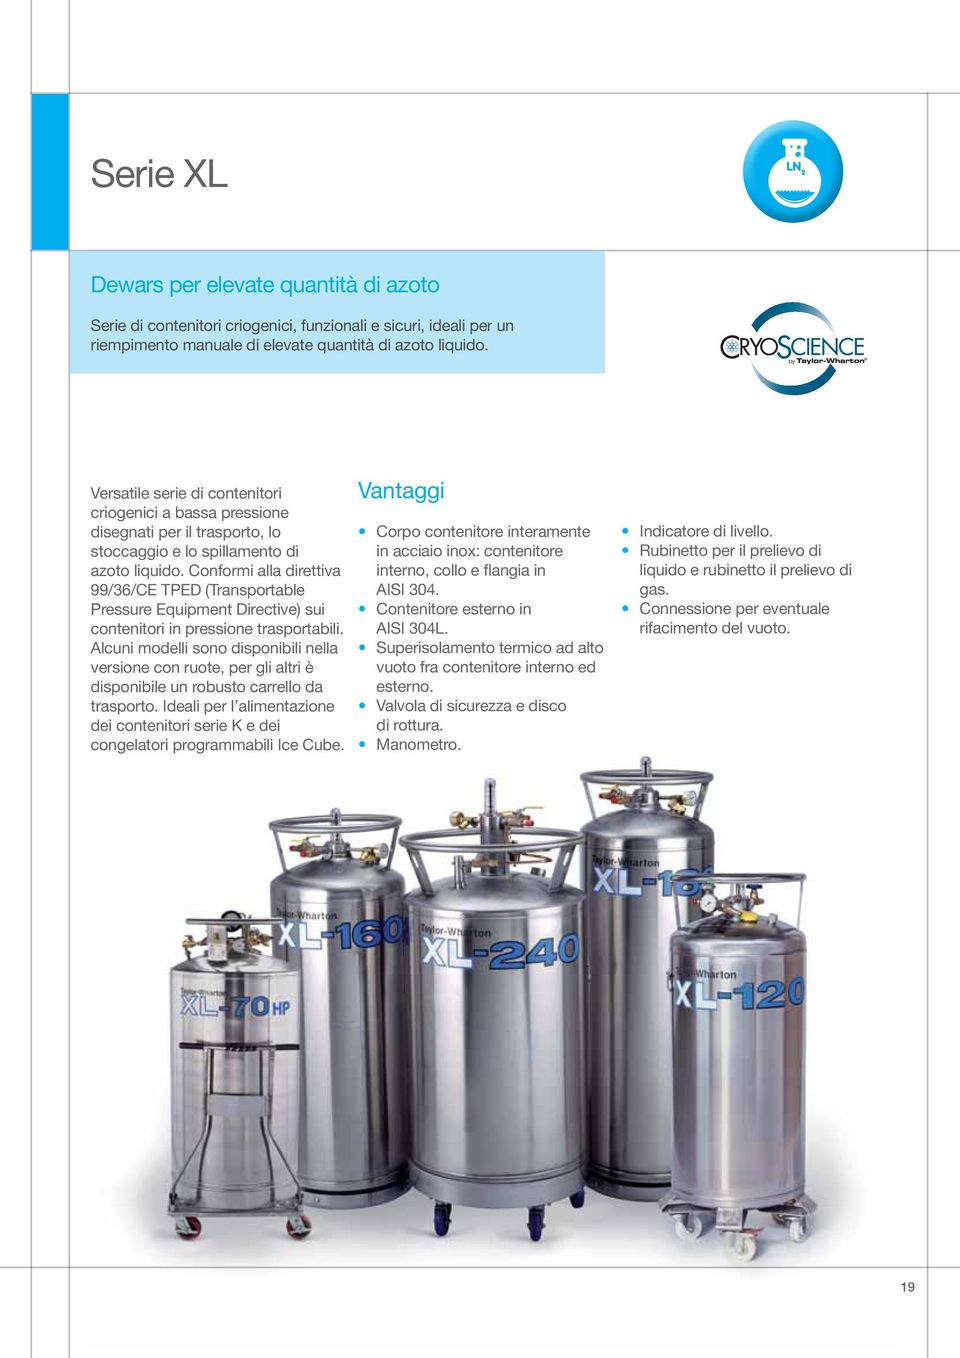 Conformi alla direttiva 99/36/CE TPED (Transportable Pressure Equipment Directive) sui contenitori in pressione trasportabili.